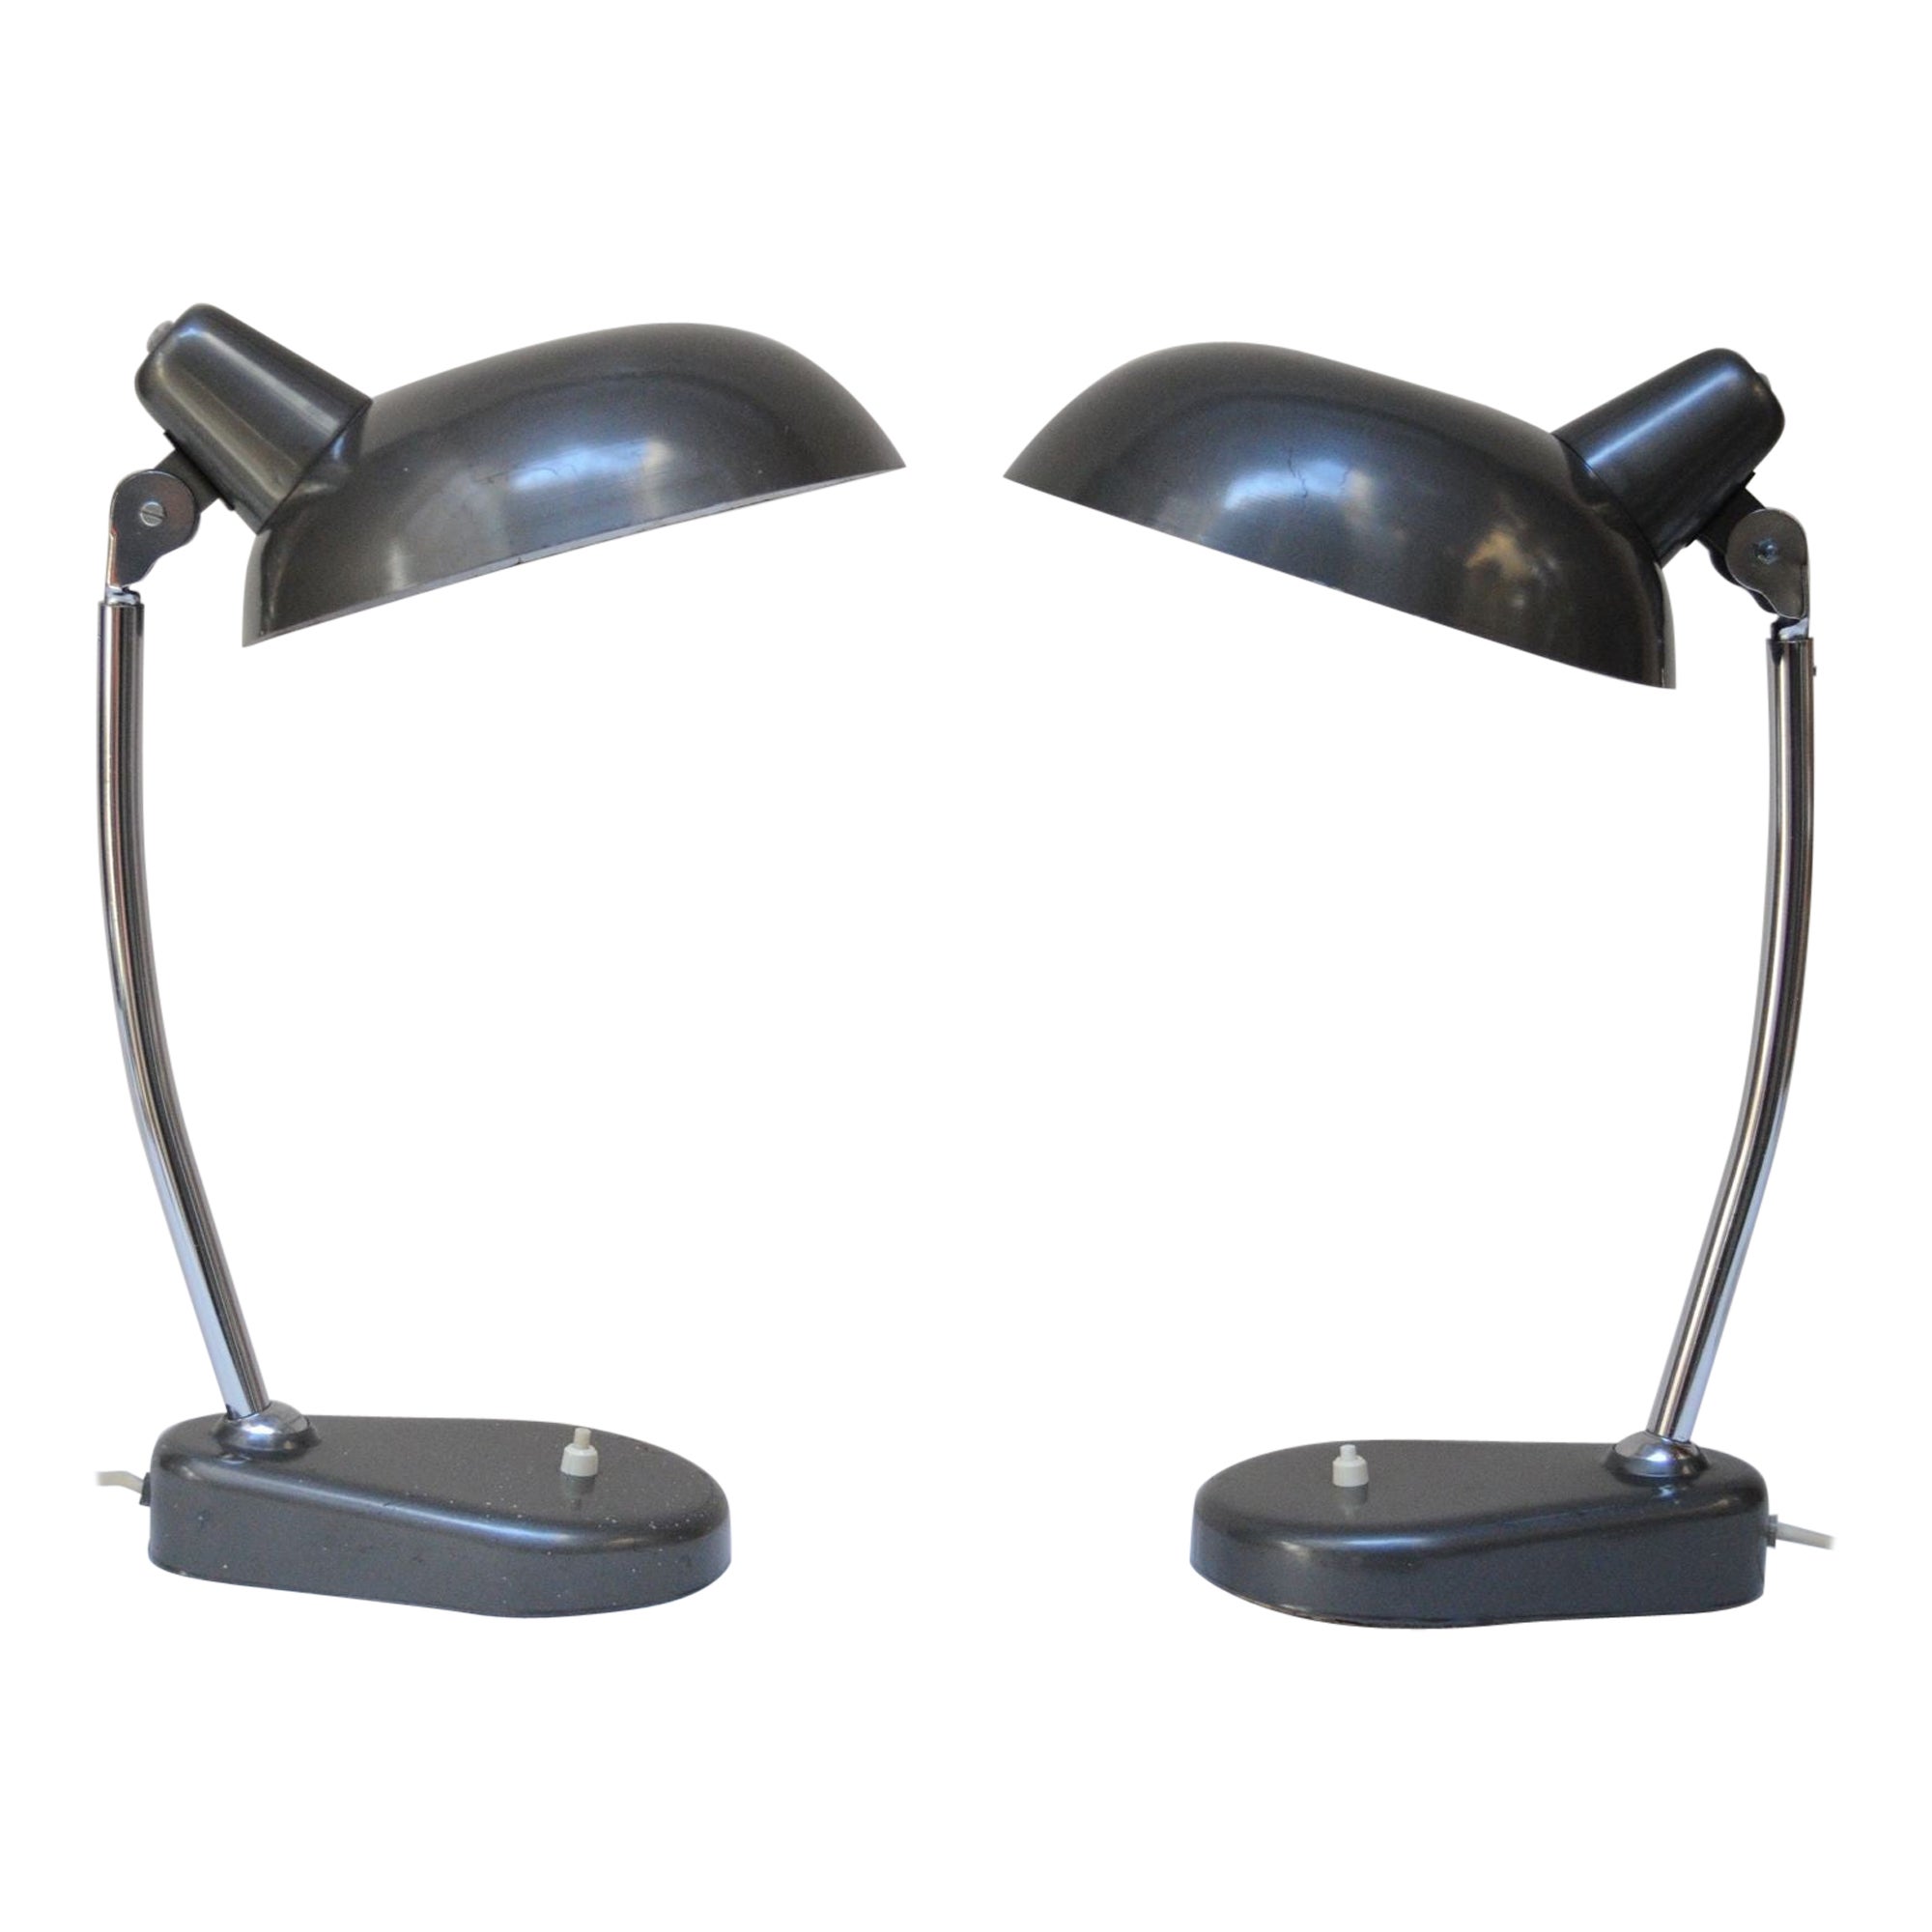 Pair of Vintage Italian Modern Industrial Chromed-Metal Task Lamps by Seminara For Sale